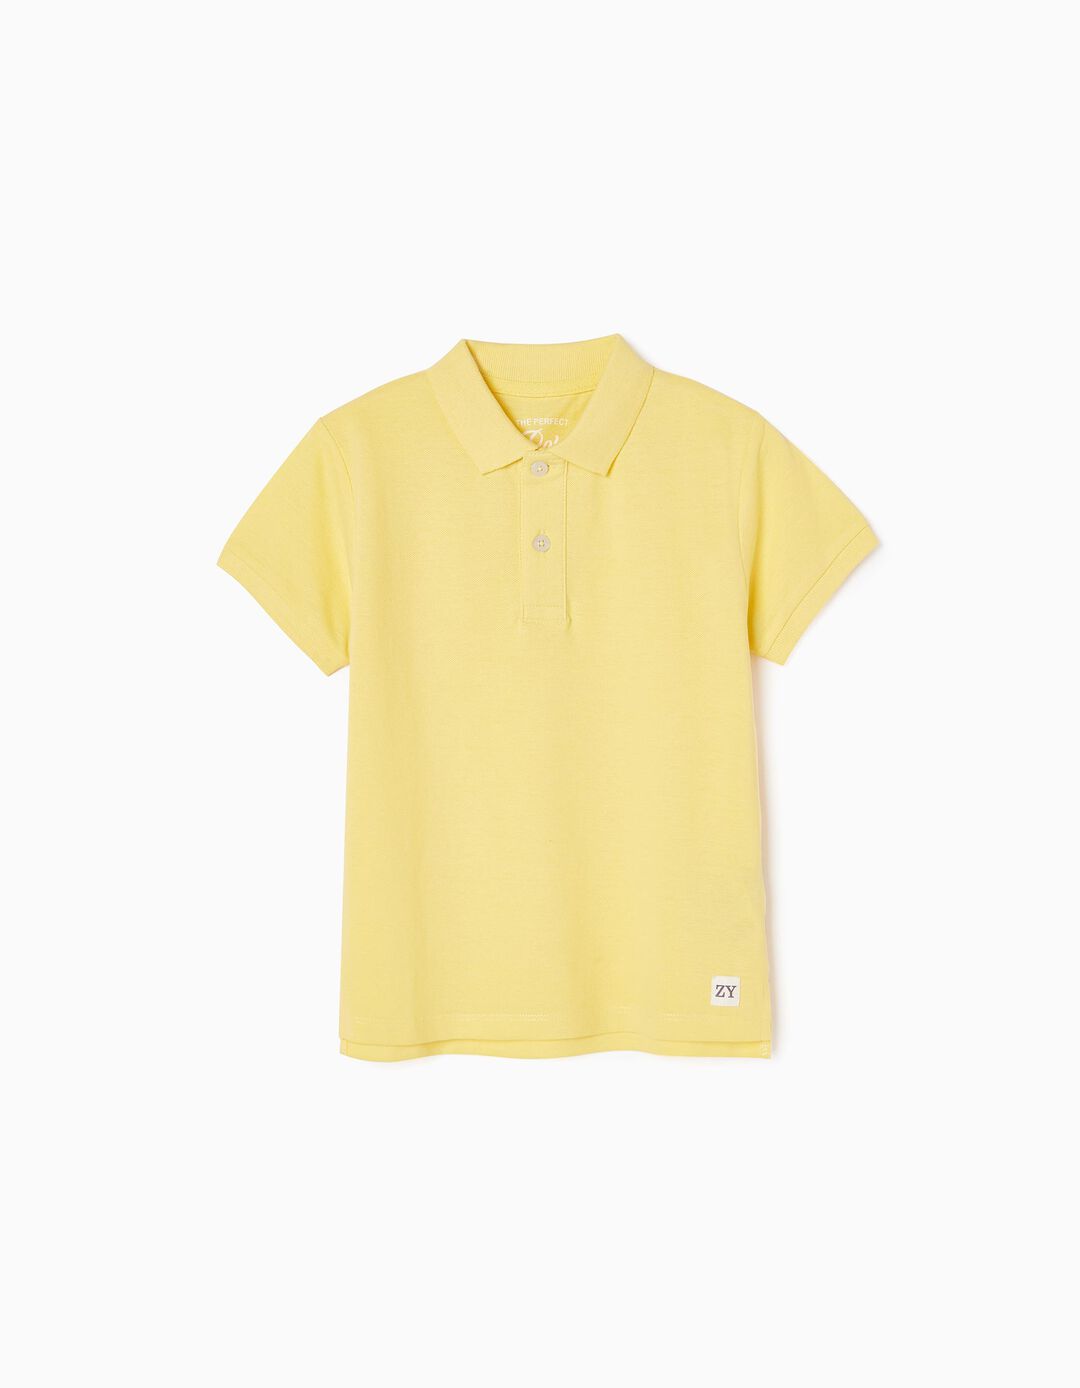 Cotton Polo Shirt for Boys, Yellow